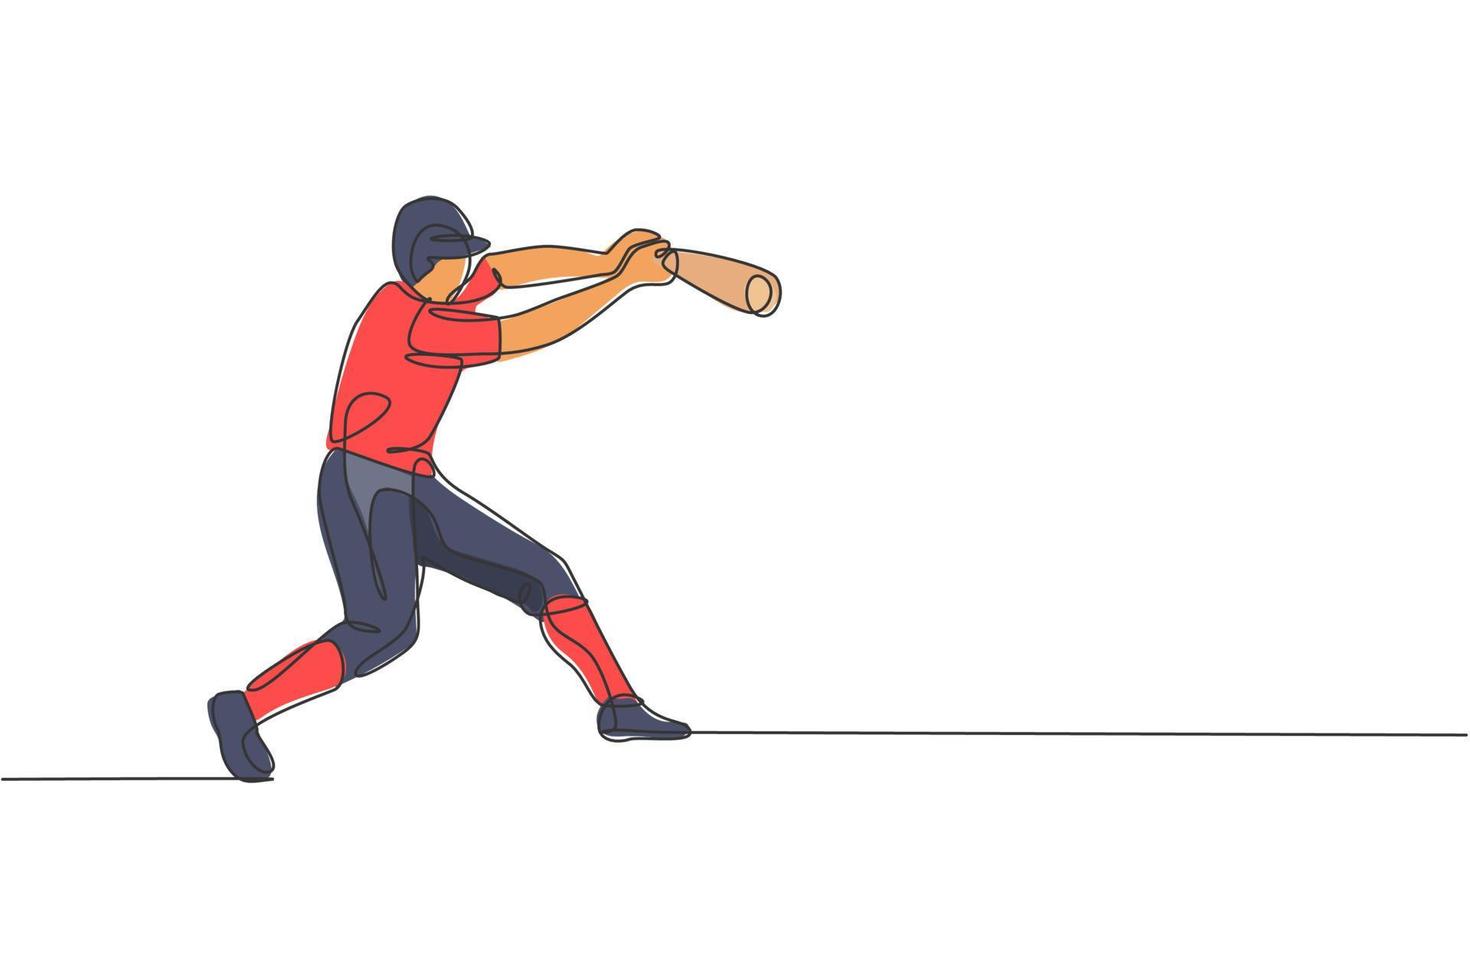 un disegno a linea singola della pratica del giovane giocatore di baseball energico per colpire l'illustrazione vettoriale della palla. concetto di allenamento sportivo. design moderno a linea continua per banner torneo di baseball